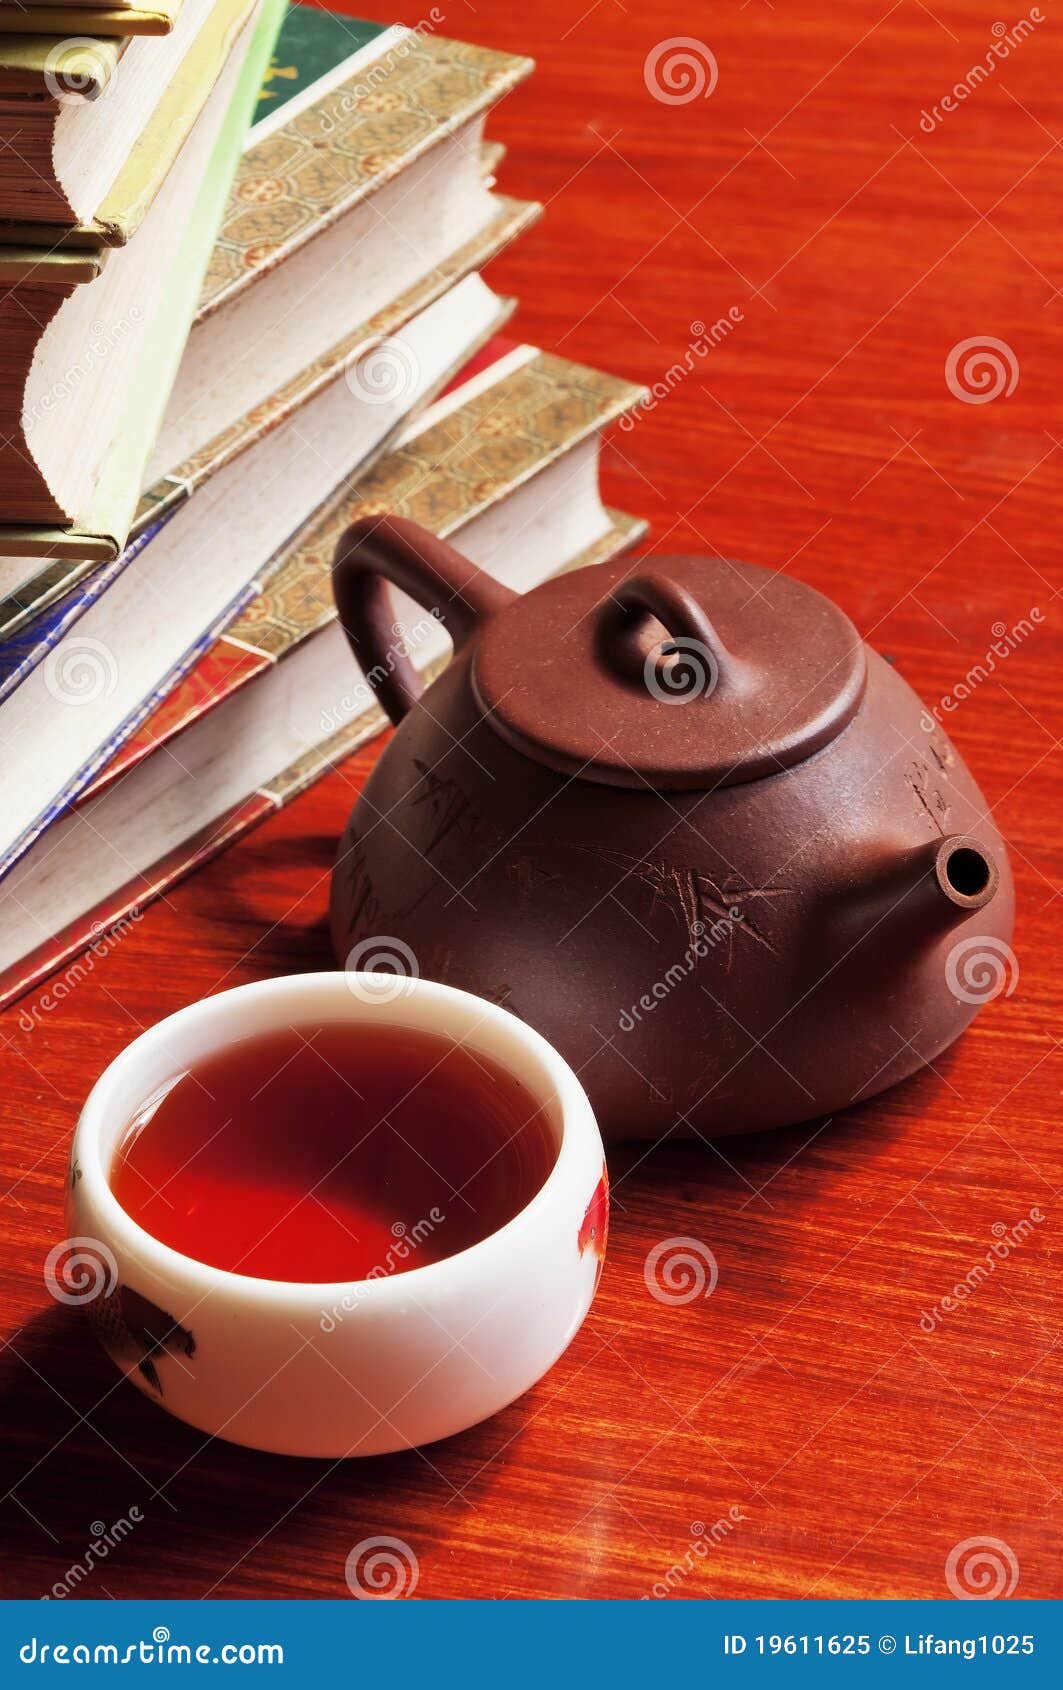 tea pot and teacup